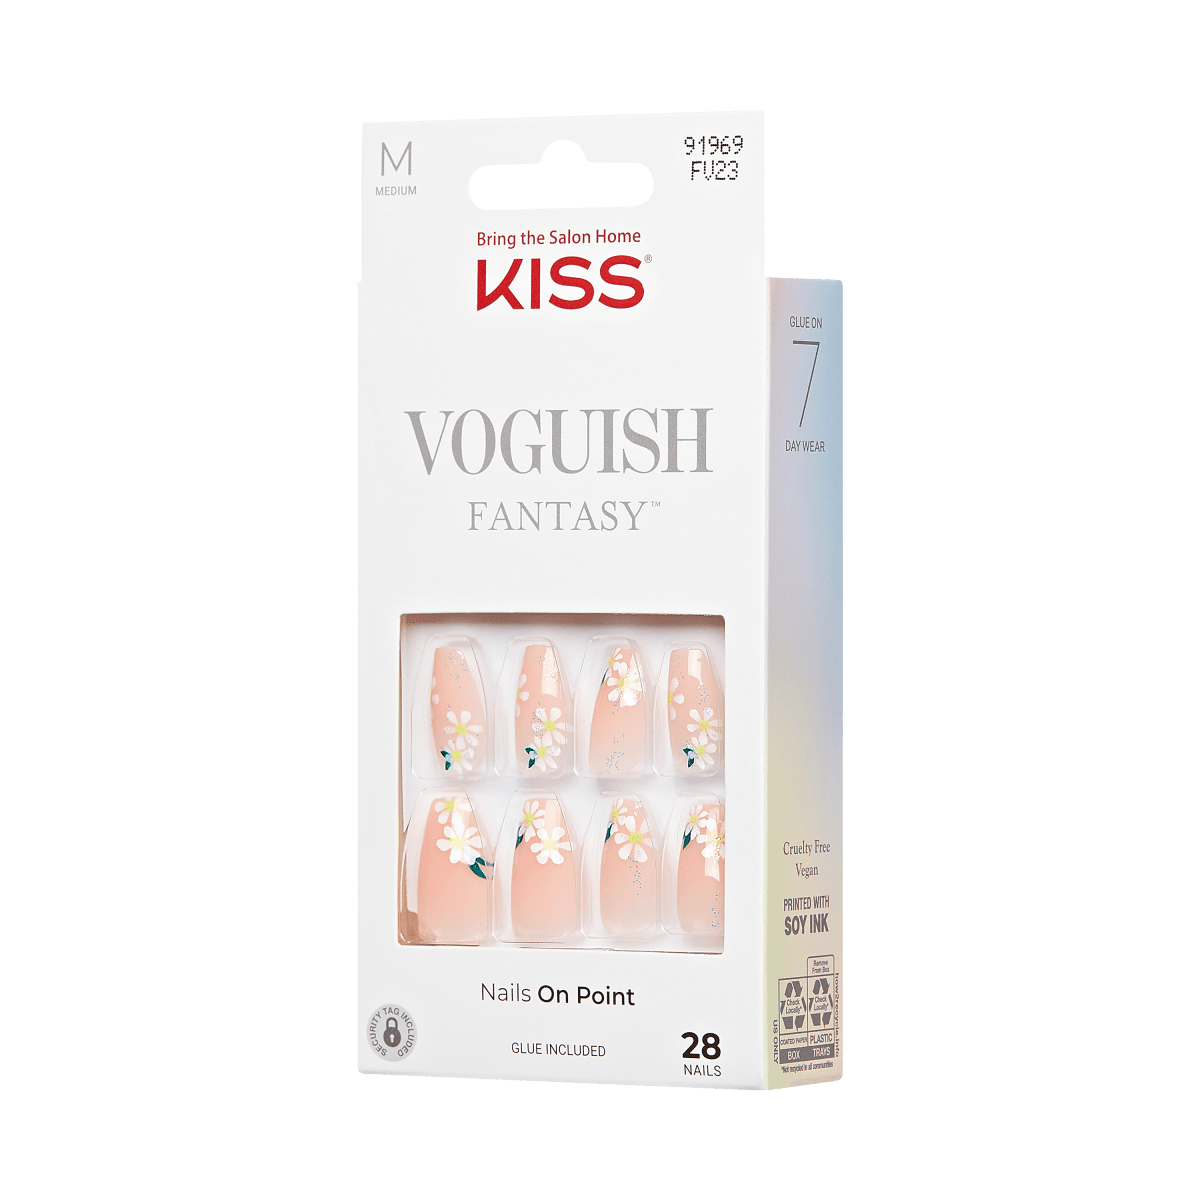 KISS Voguish Fantasy Nails - 4 Wheel Drive